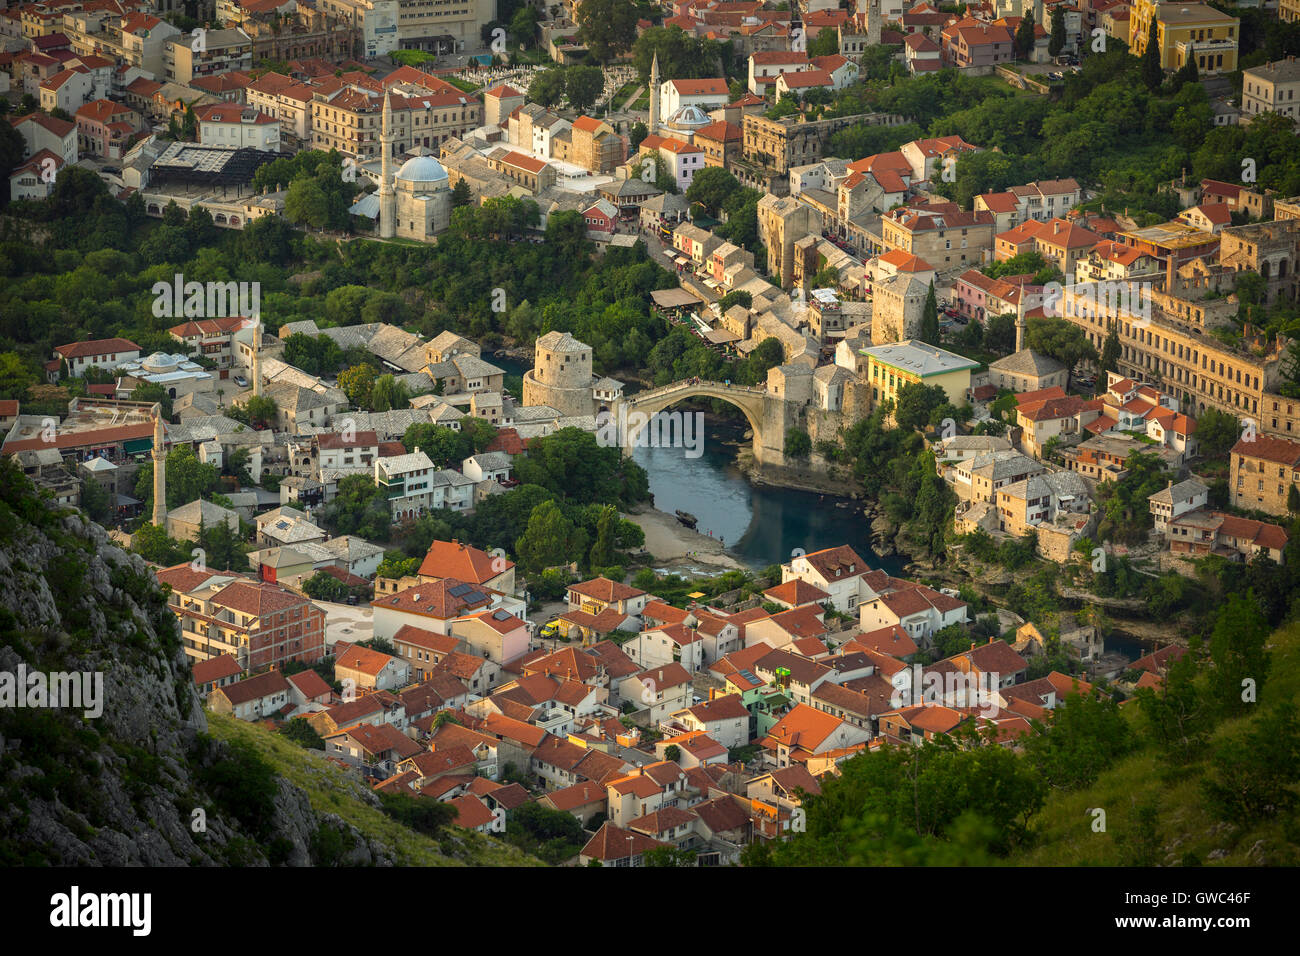 Eine Luftaufnahme des Flusses Neretva führt über alte Mostar und die alte Brücke (Stari Most). Und Bosnien-Herzegowina von oben. Stockfoto